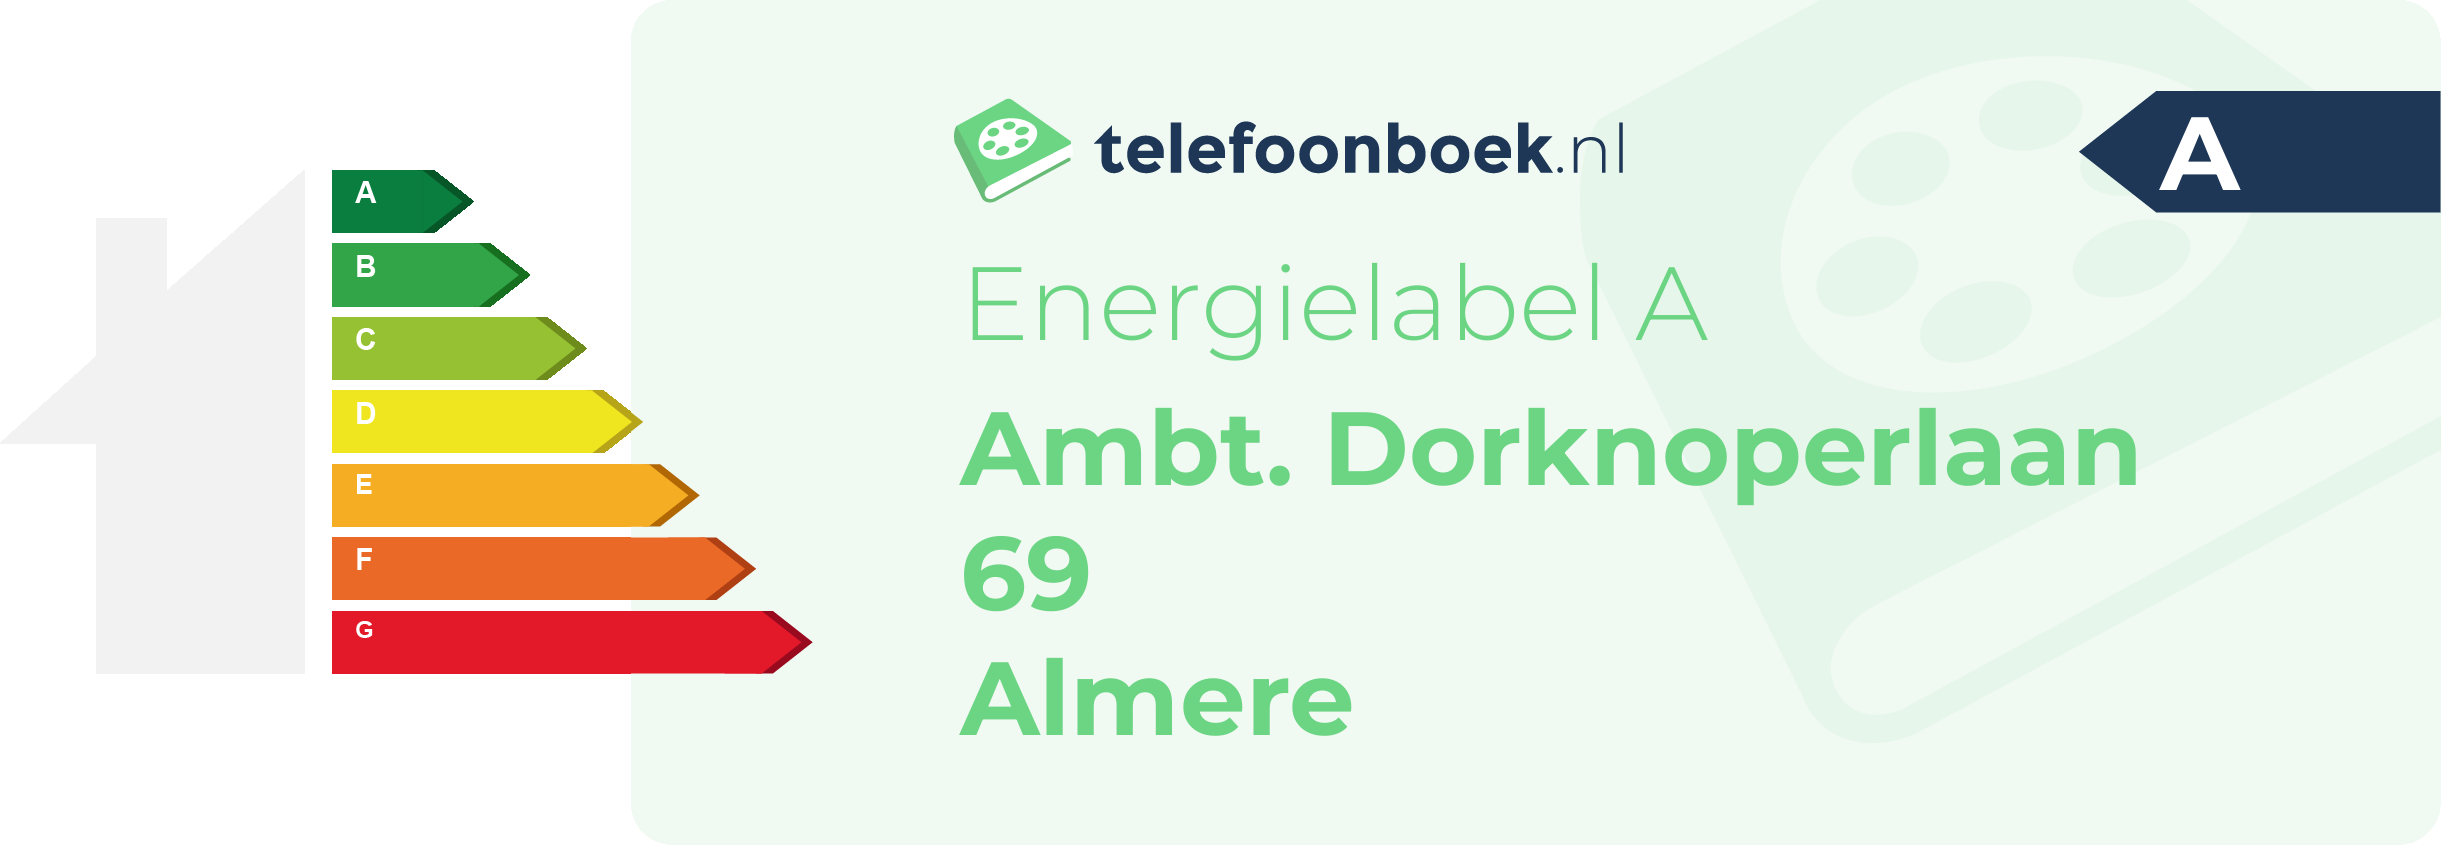 Energielabel Ambt. Dorknoperlaan 69 Almere